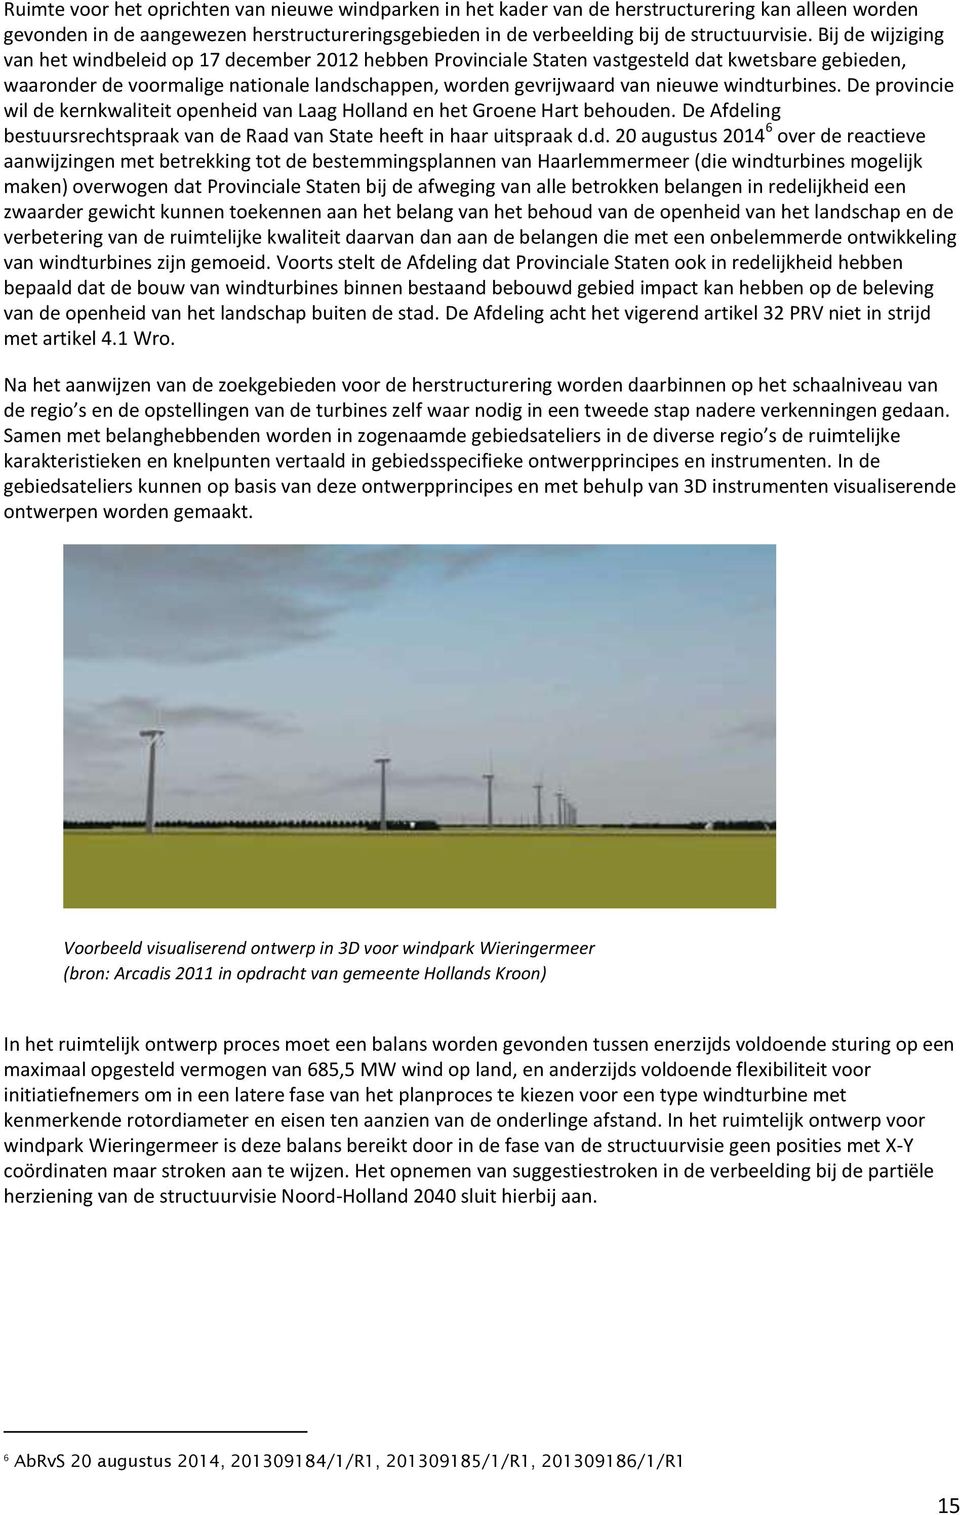 windturbines. De provincie wil de kernkwaliteit openheid van Laag Holland en het Groene Hart behouden. De Afdeling bestuursrechtspraak van de Raad van State heeft in haar uitspraak d.d. 20 augustus